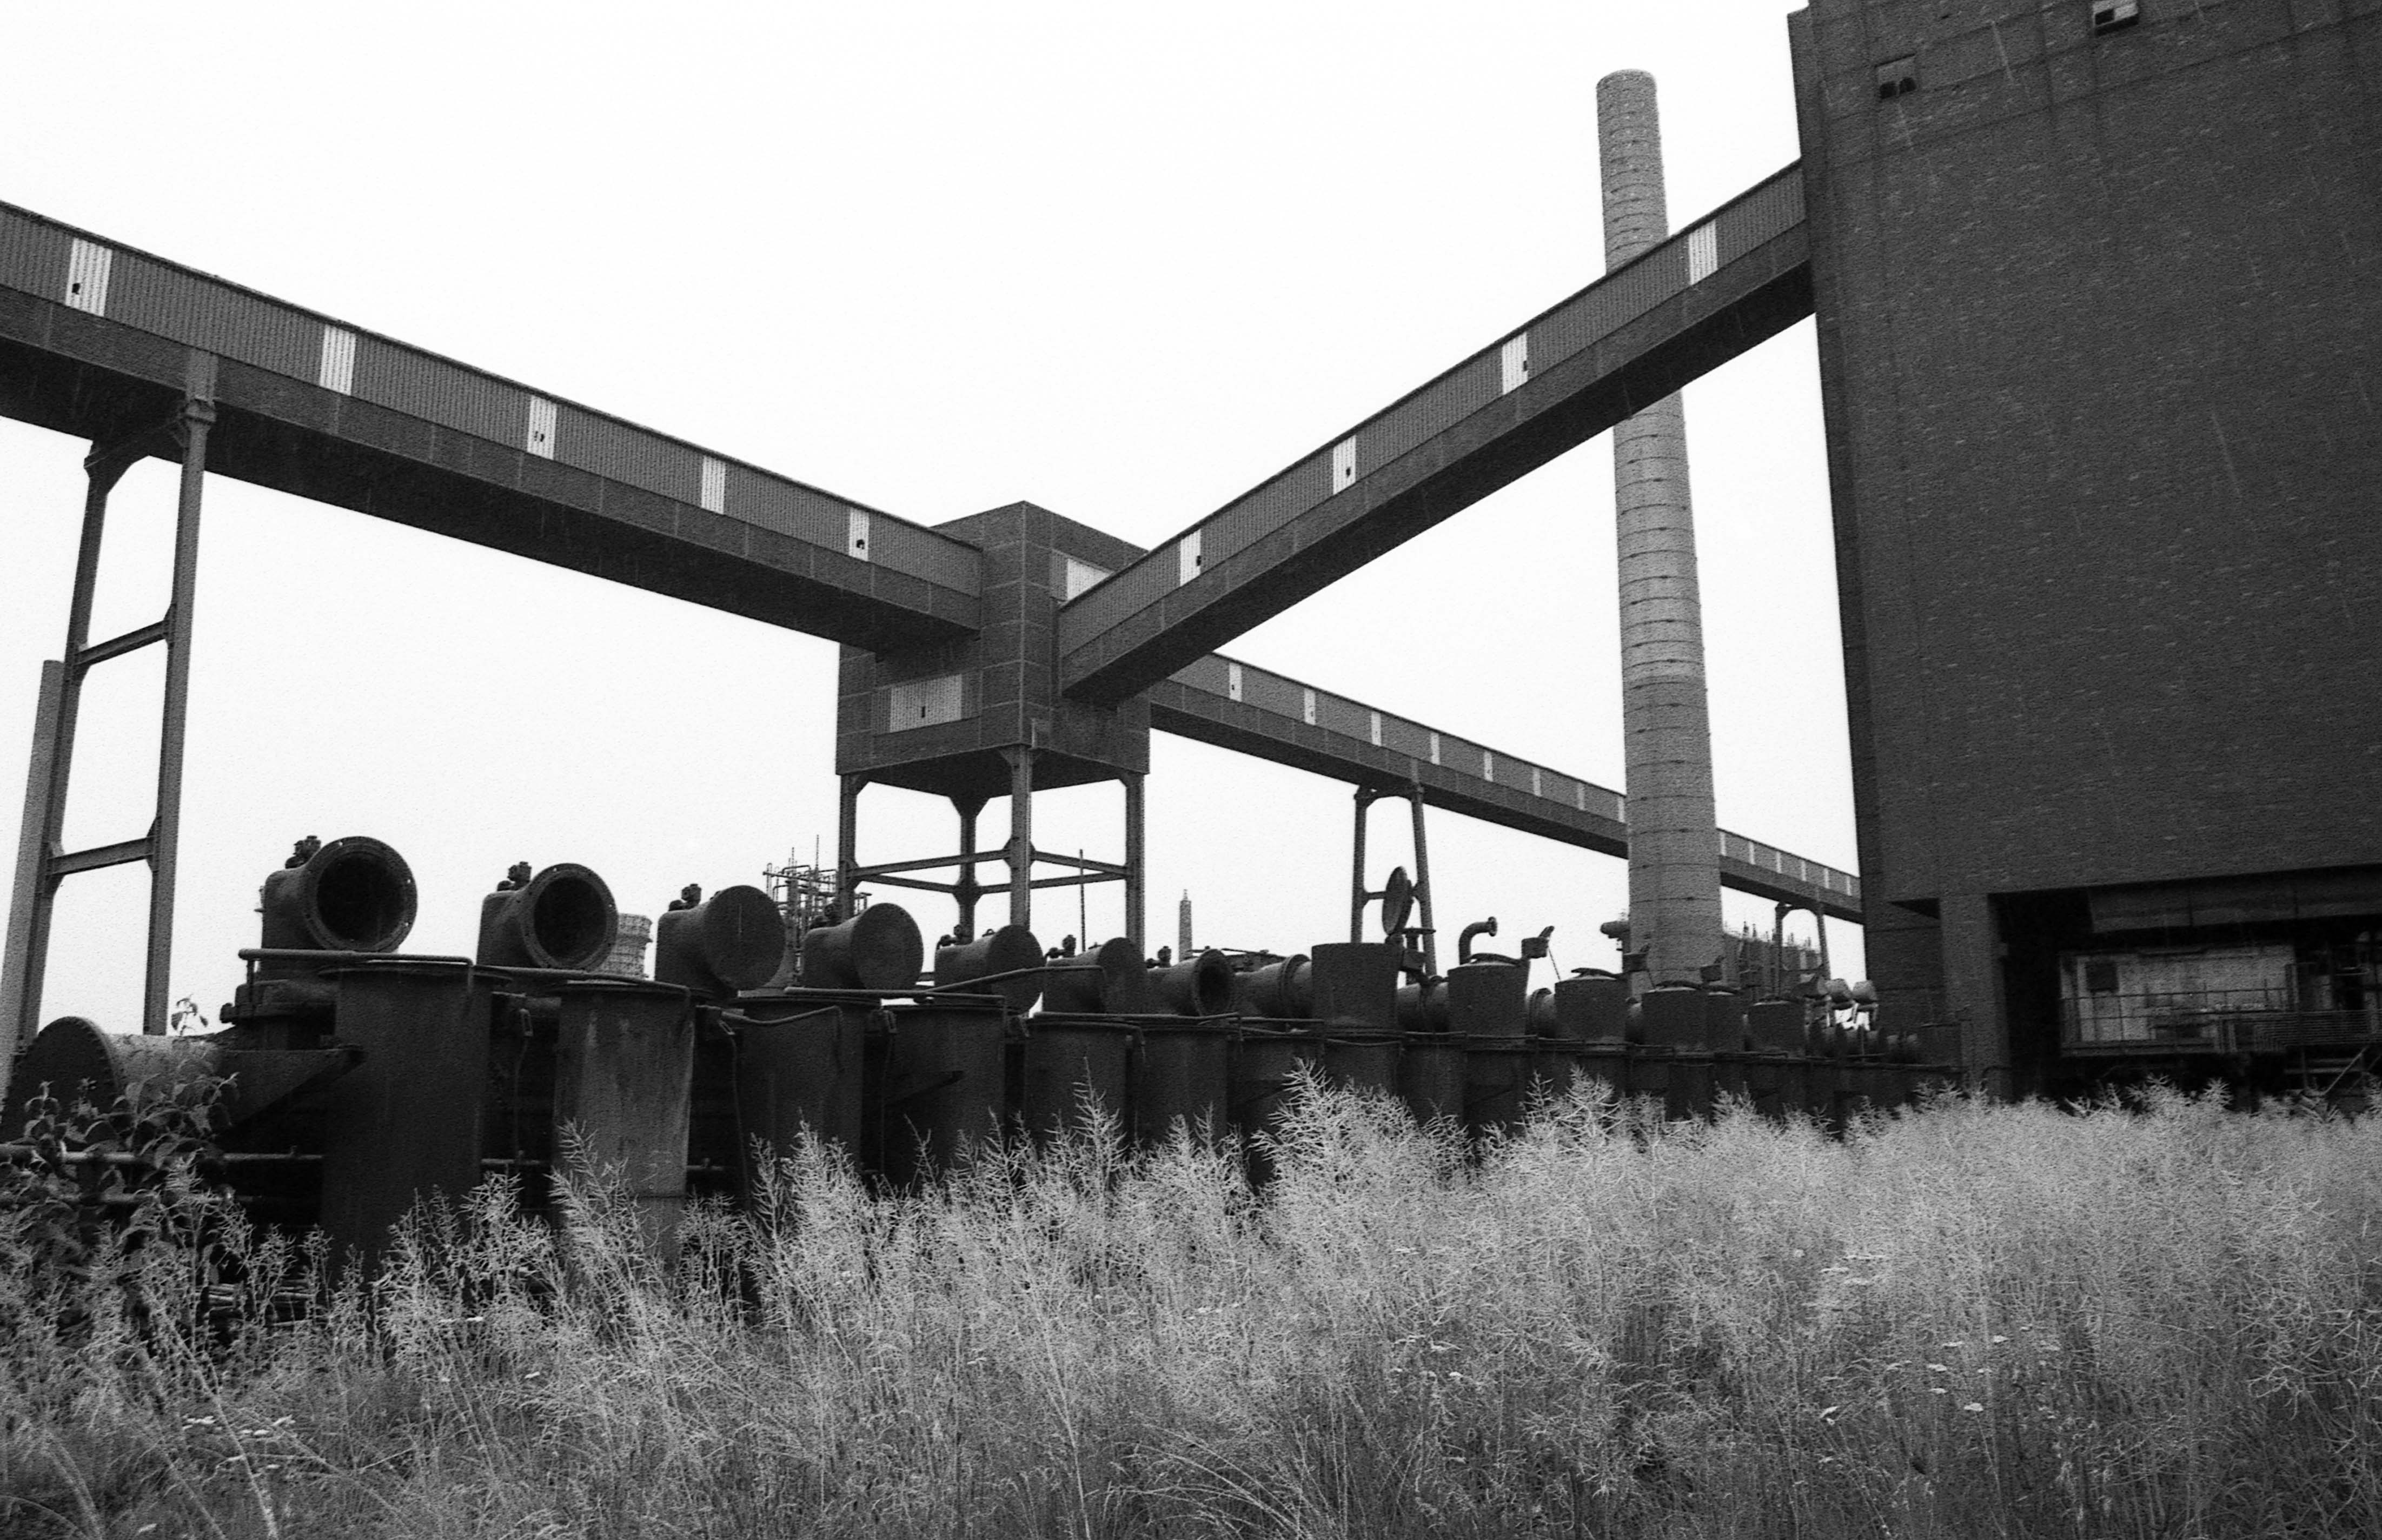 Conveyor - Landschaftspark Duisburg-Nord, Germany - 2001